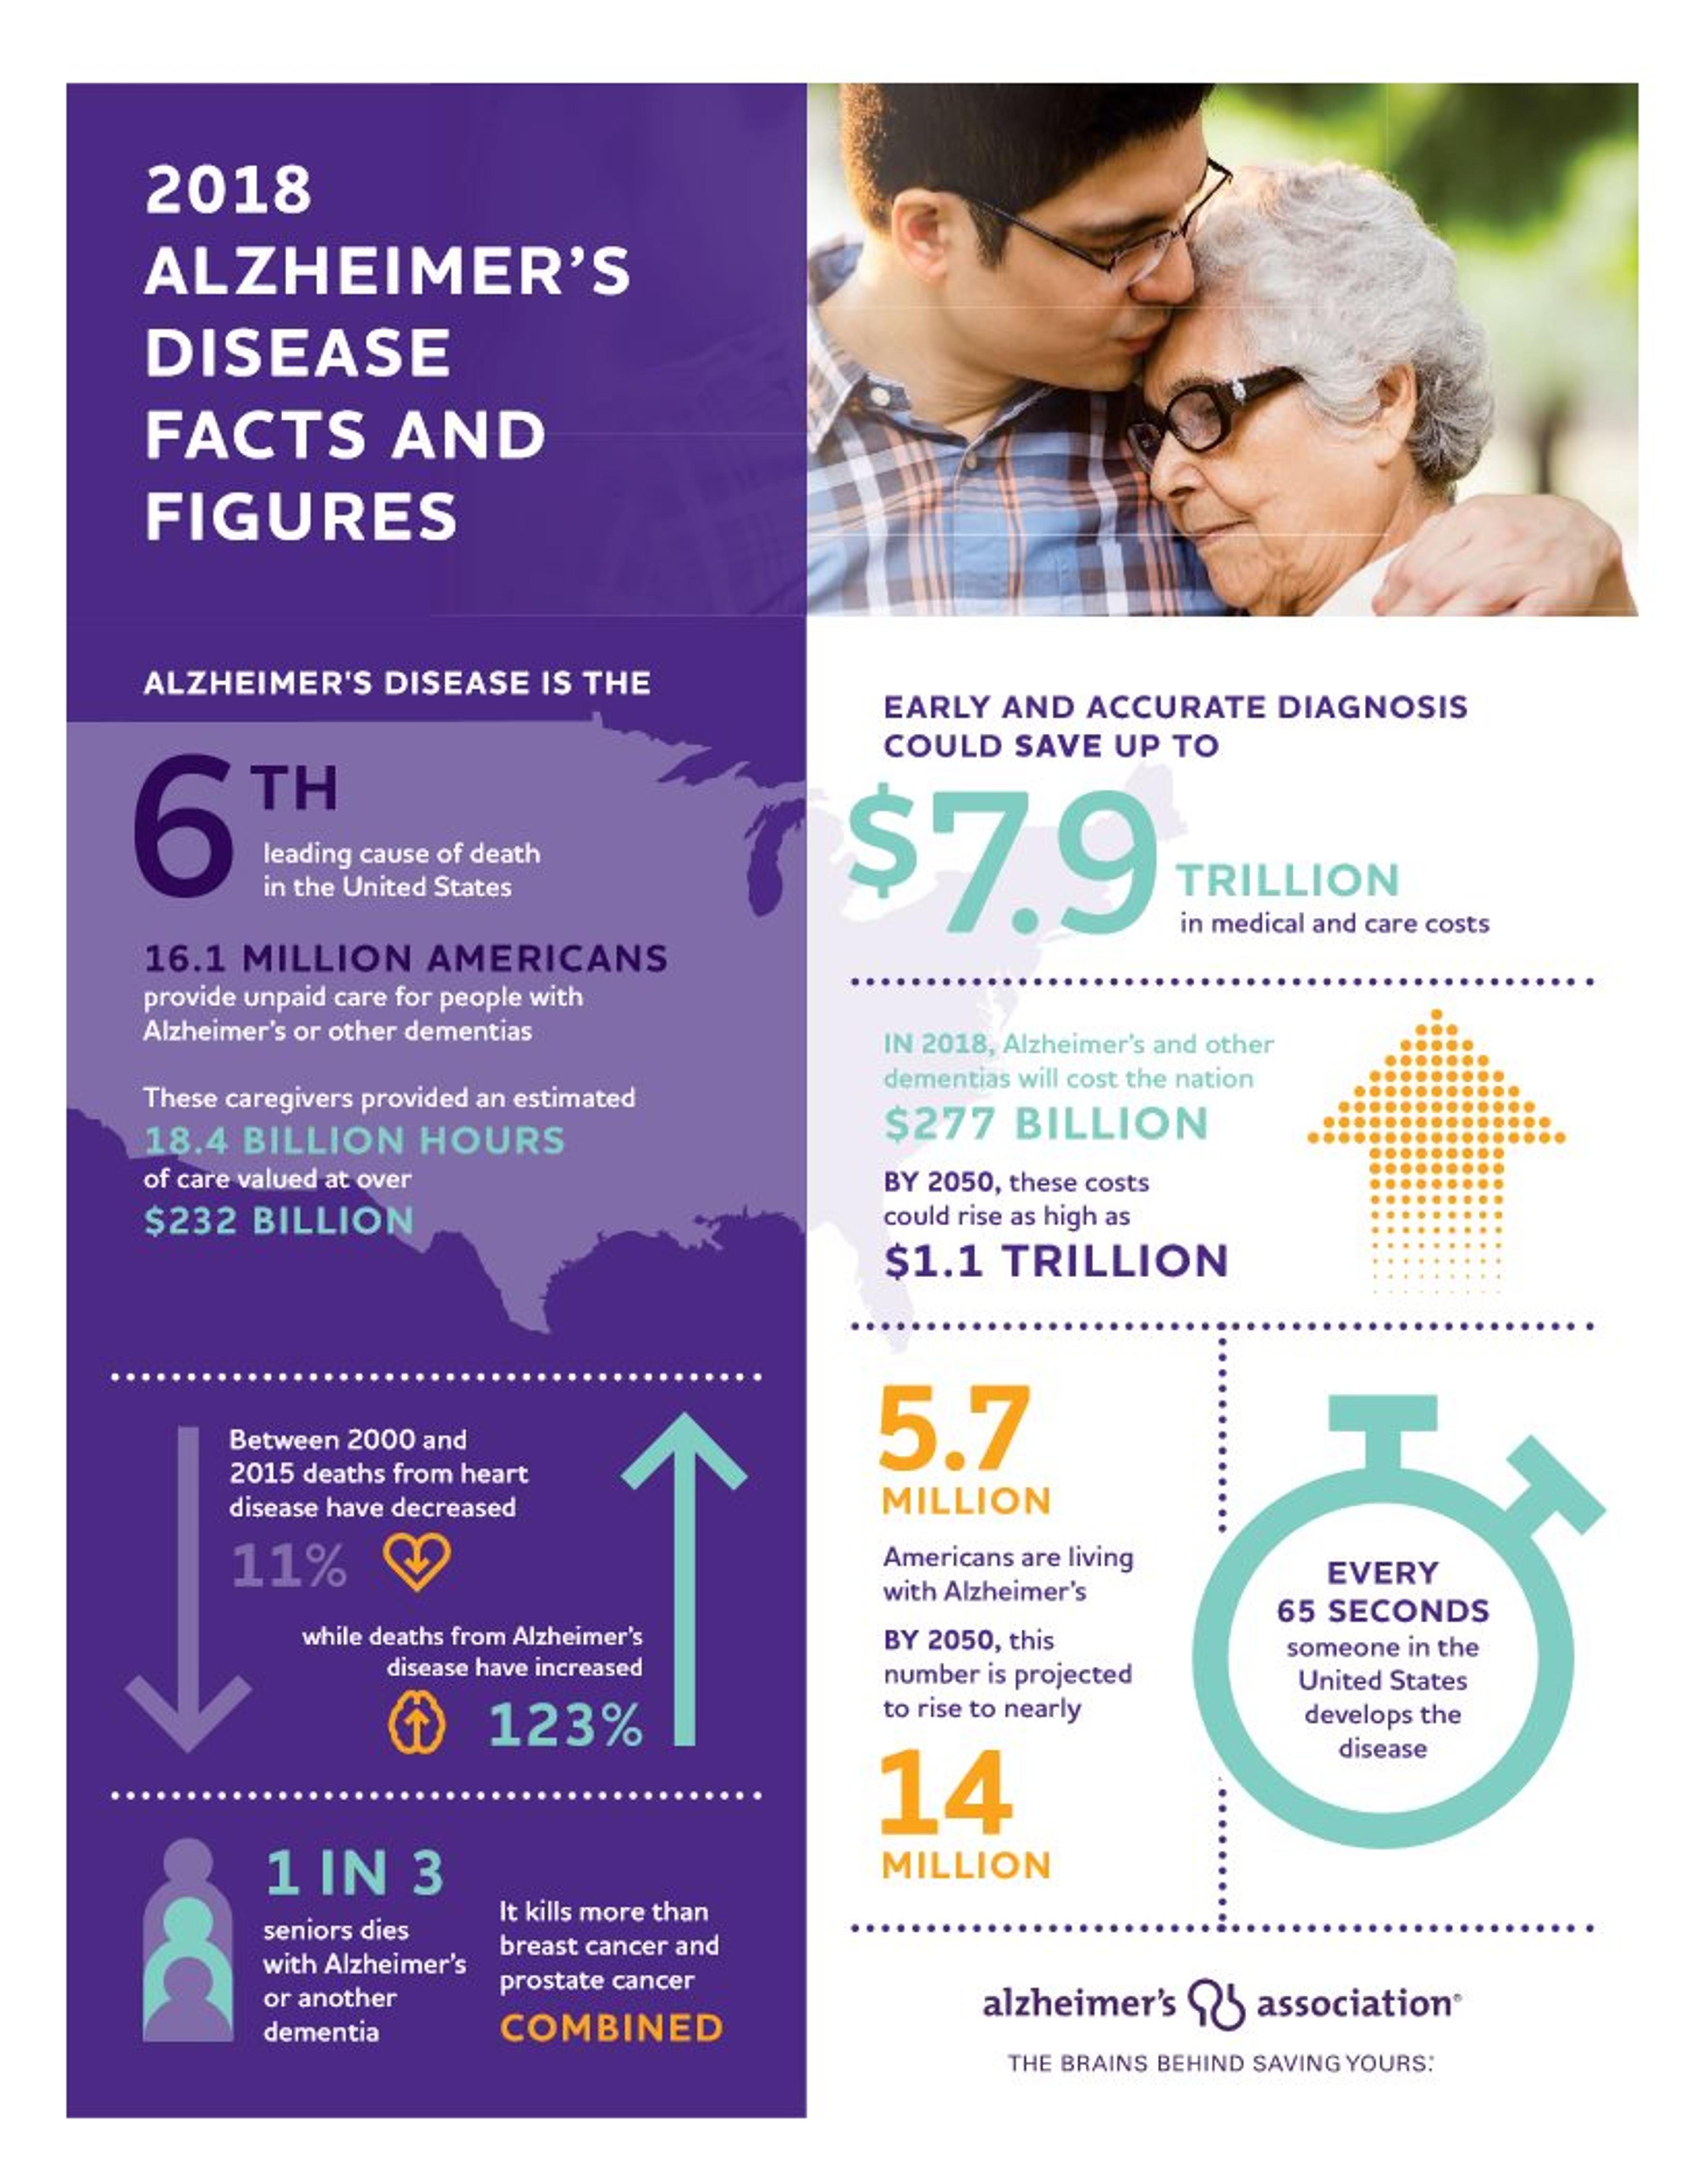 Alzheimer's Association infographic